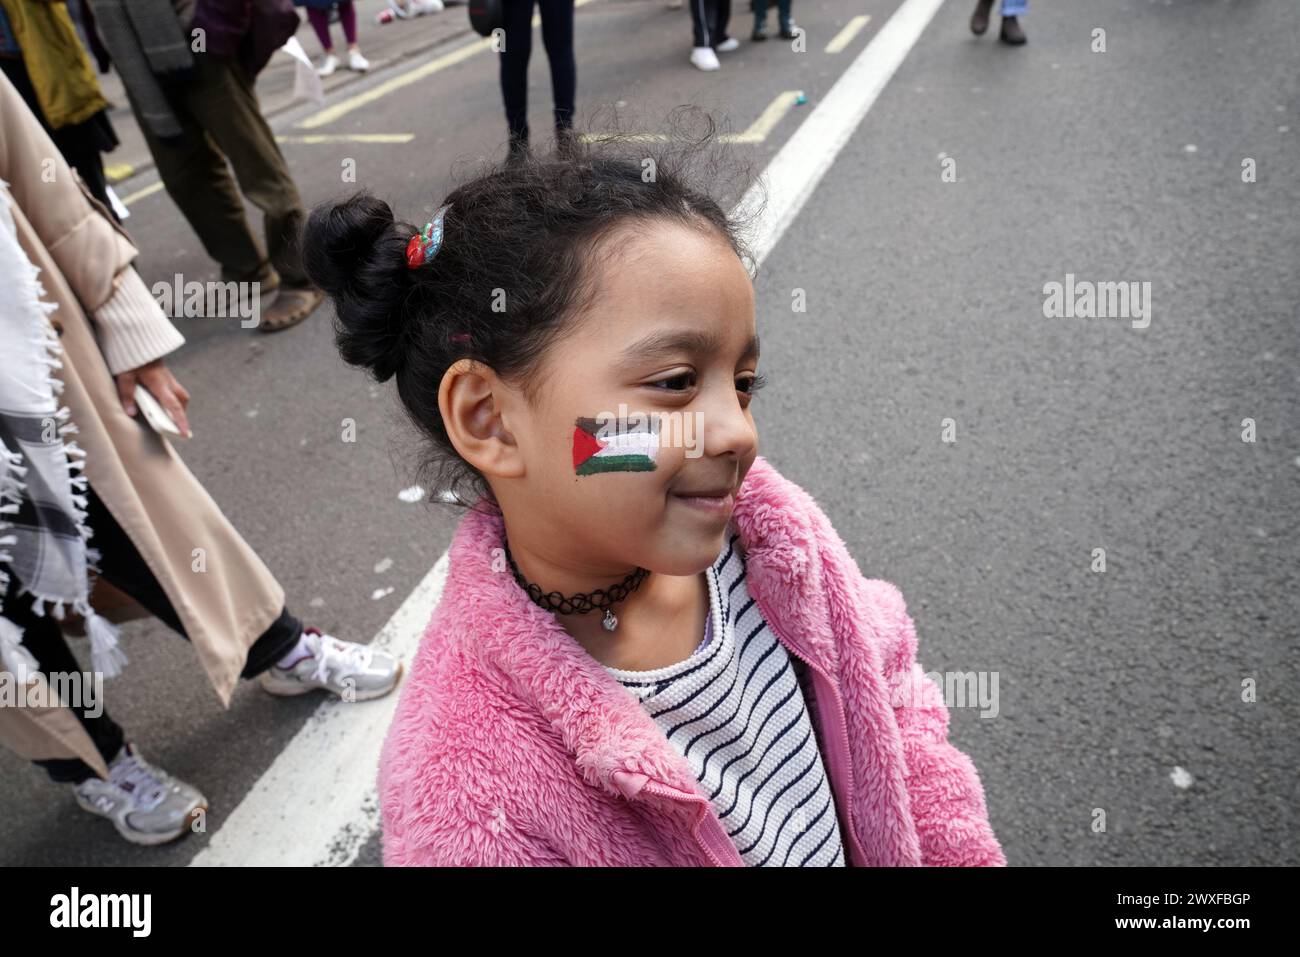 Housands a marché de Russell Square à Trafalgar Square, lors de ce qui est maintenant la onzième marche consécutive à Londres, exigeant un cessez-le-feu à Gaza. La marche est restée pacifique. Crédit : Natasha Quarmby/Alamy Live News Banque D'Images